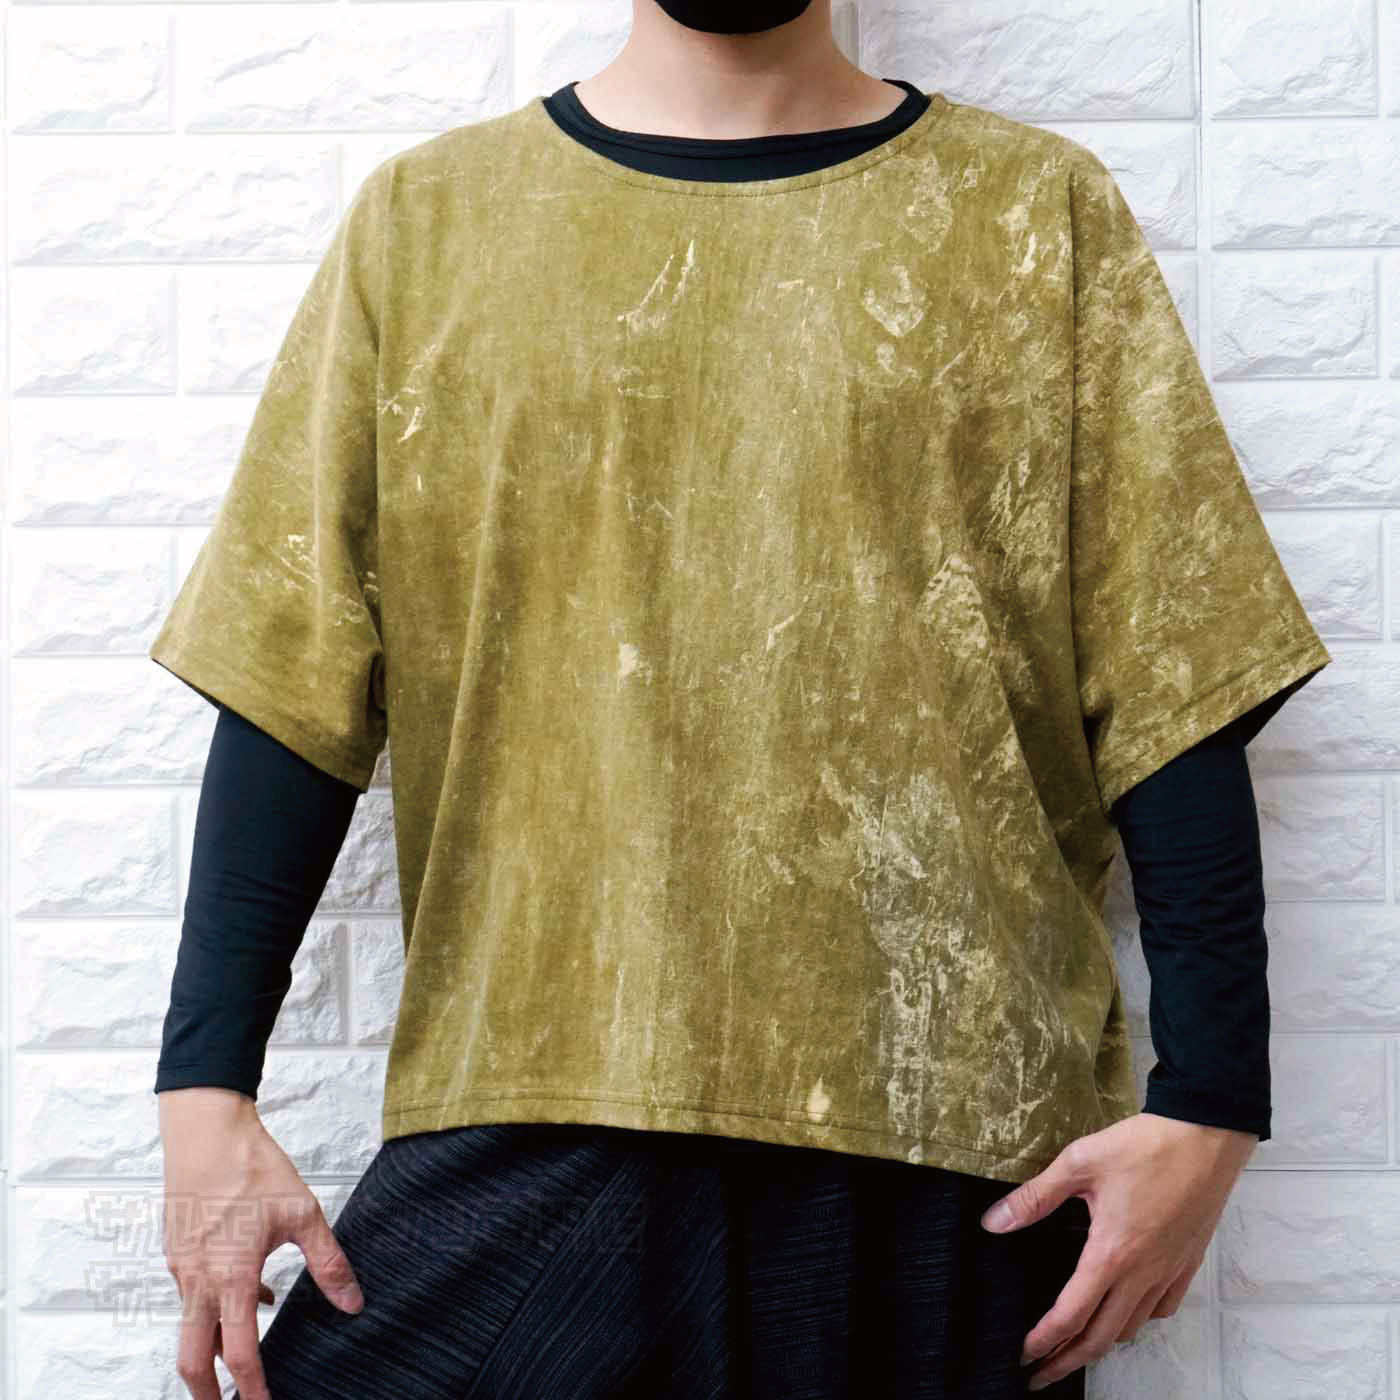 ドルマンシャツ エスニック Tシャツ 半袖 5分丈 トップス メンズ レディース ユニセックス ストーンウォッシュ 大きめサイズ ゆったり アジアン ファッションブラウン